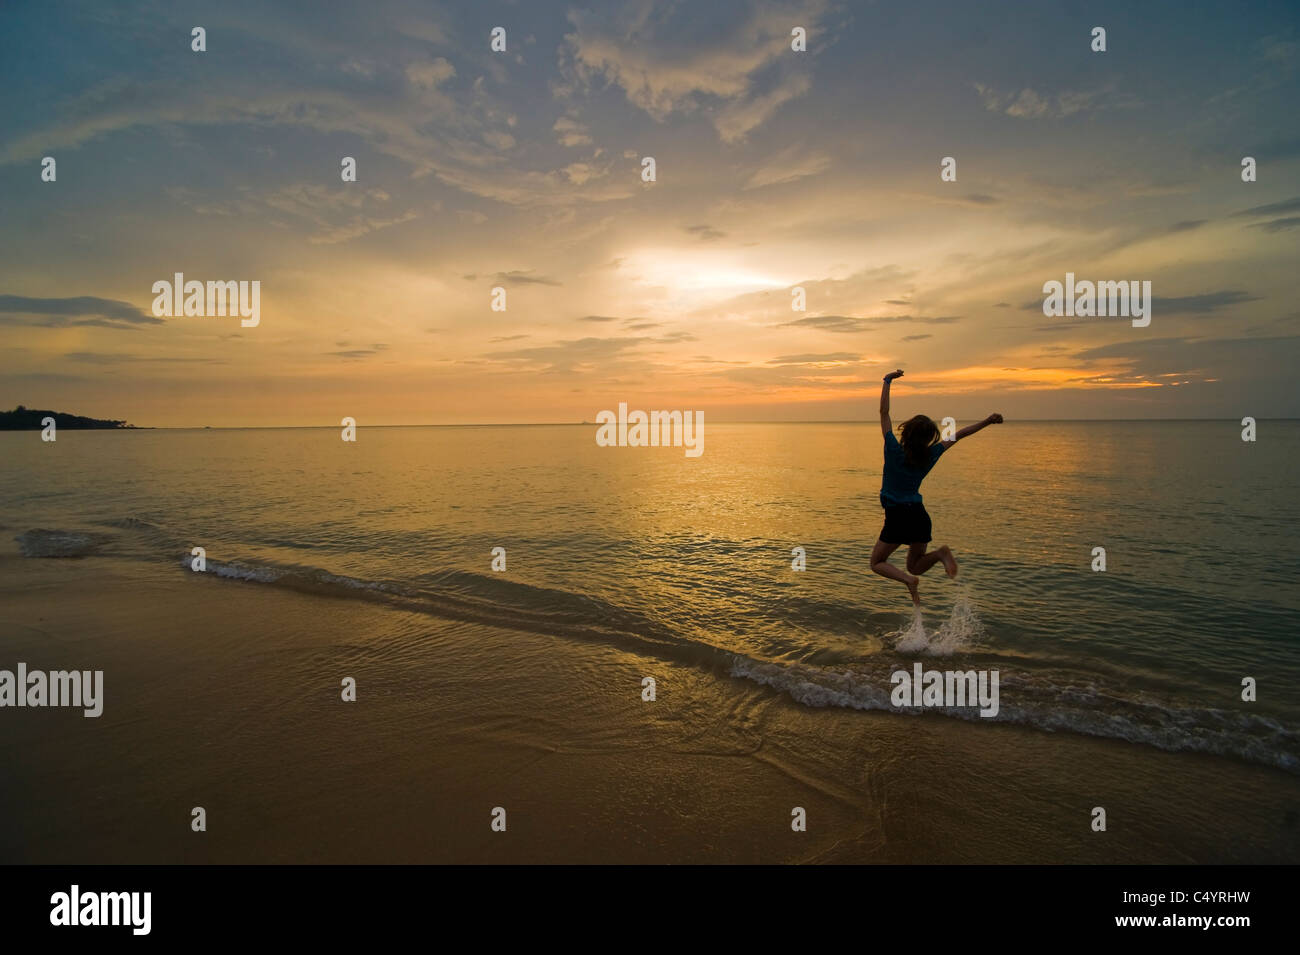 Eine junge Frau springen vor Freude und feiern am Strand bei Sonnenuntergang. Aufgenommen am Phra Ae Beach, Koh Lanta, Süd-Thailand Stockfoto